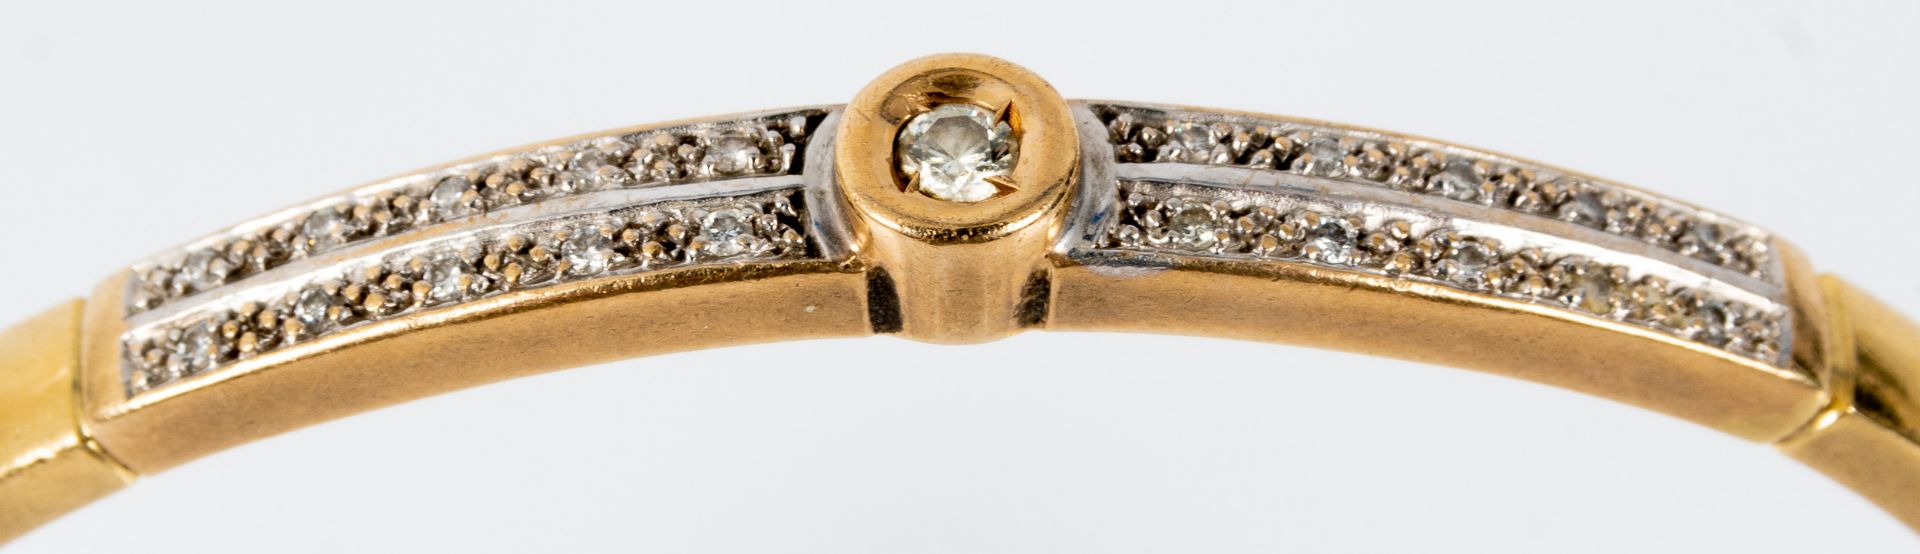 Armreif, 585er Gelbgold, hohle Fassung. Oberseitig 21 winzige Diamanten in Zweierreihen, mittig 1 r - Bild 4 aus 7